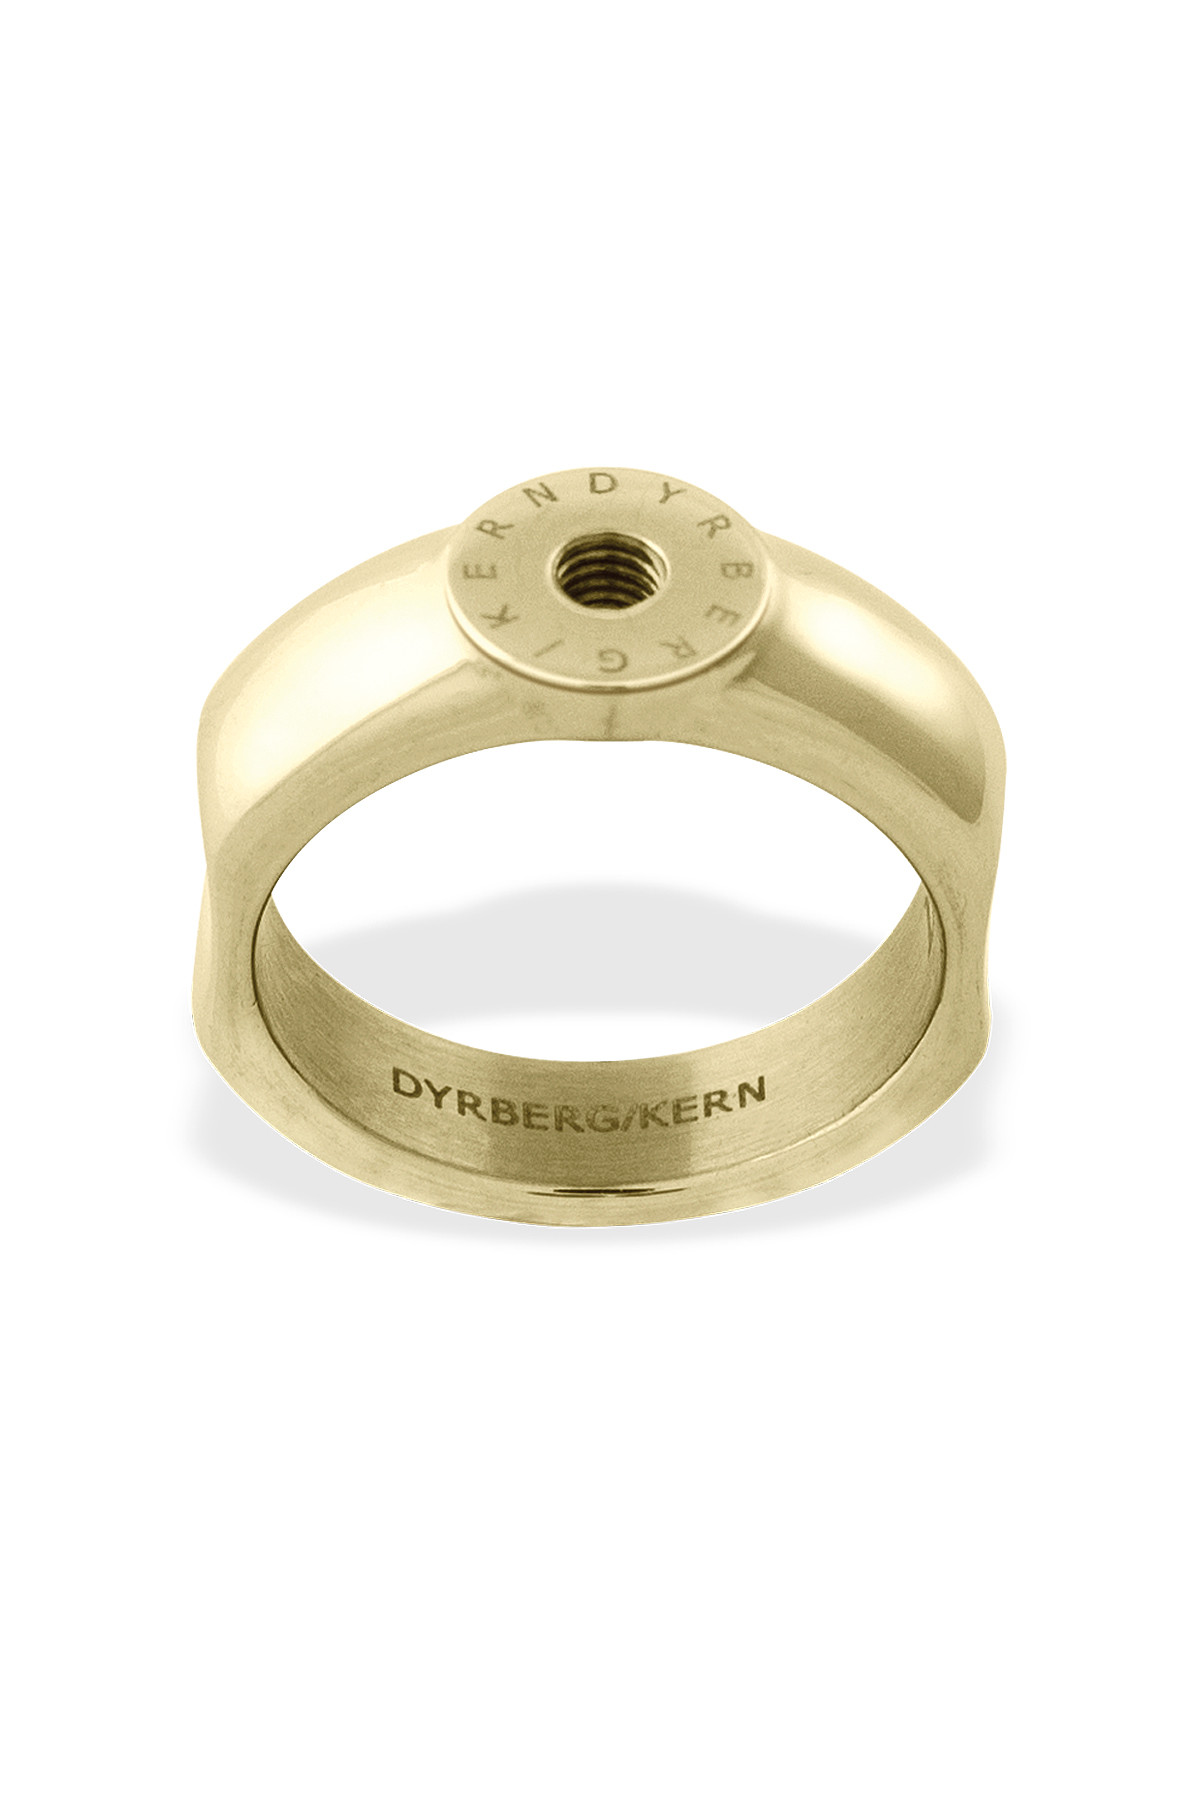 Billede af Dyrberg/Kern Ring Ring, Farve: Guld, Størrelse: IIIII/63, Dame